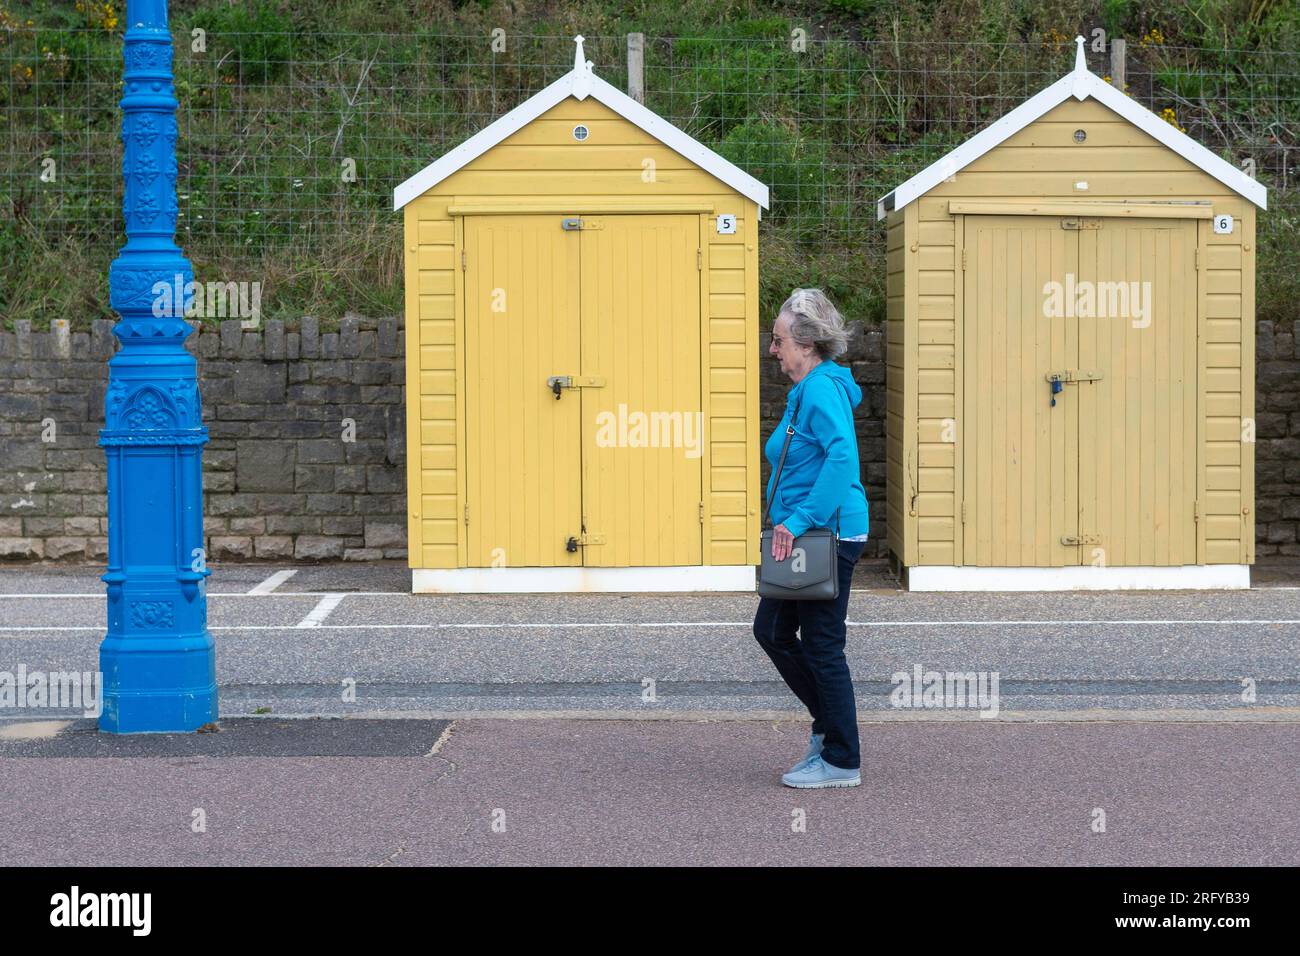 Femme portant un manteau bleu marchant devant des cabanes de plage jaunes, Bournemouth, Dorset, Angleterre, Royaume-Uni, 2 août 2023, Météo. Sauvage et venteux avec de fortes averses. Banque D'Images